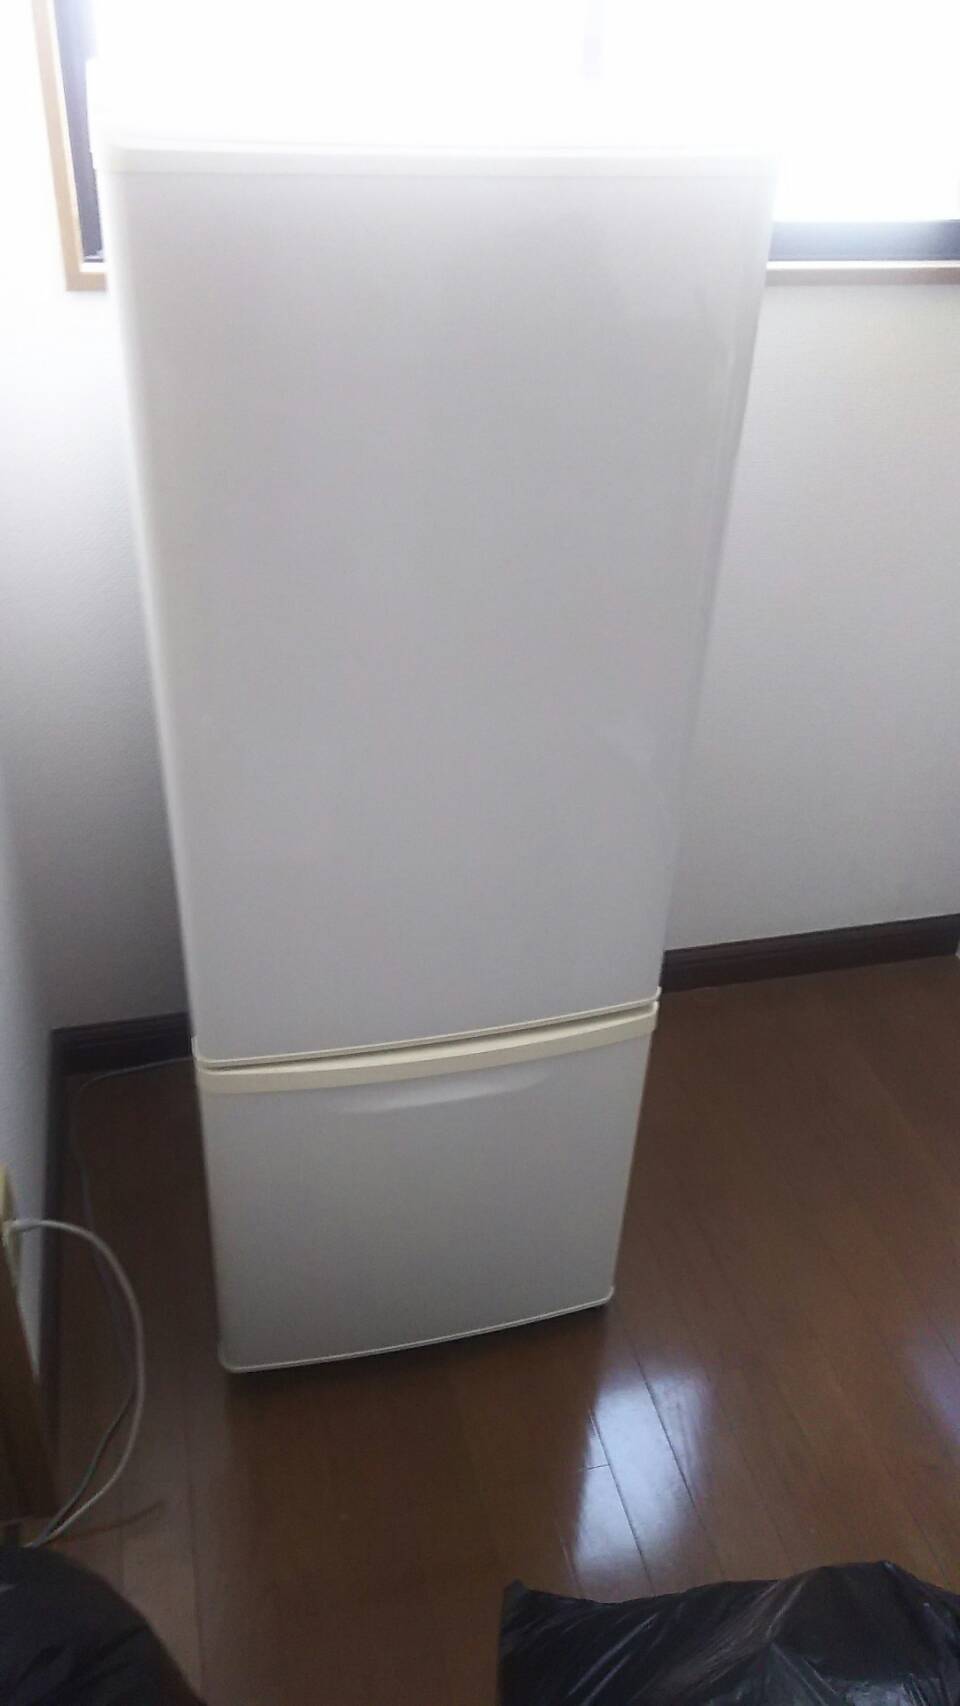 相生市大島町付近で回収した冷蔵庫です。